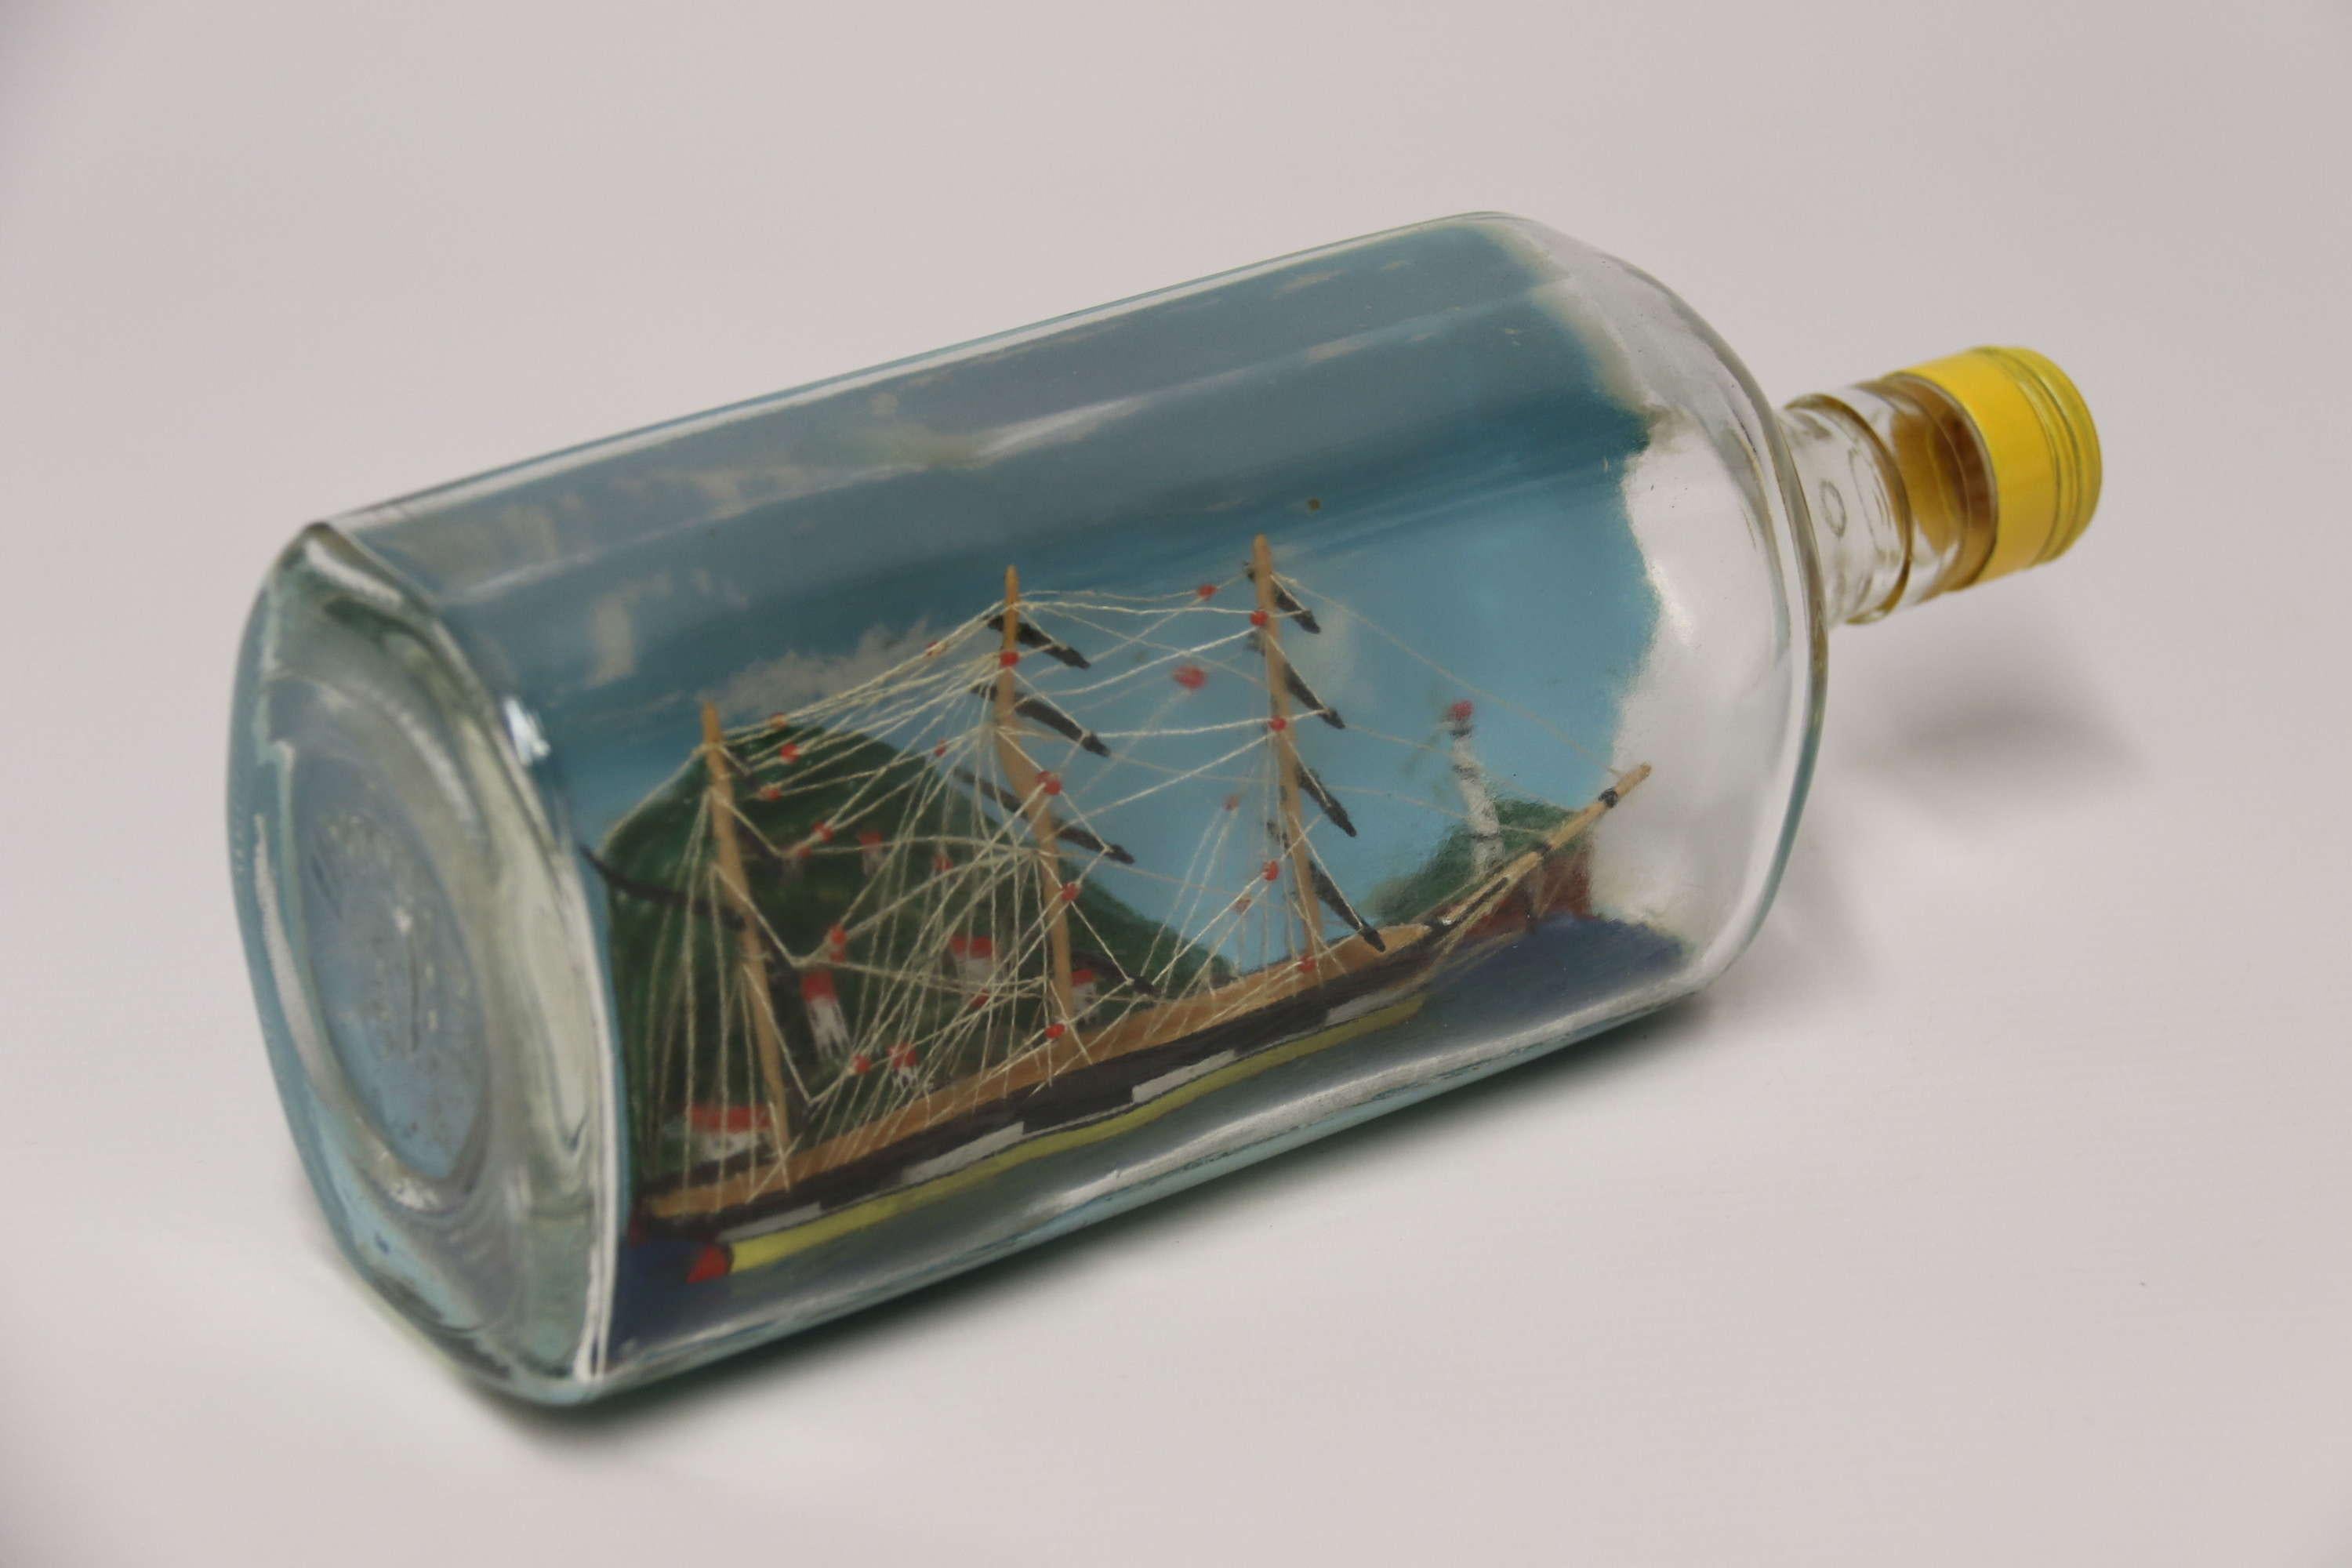 Une belle maquette d'art populaire Diorama bateau dans une bouteille

Ce diorama habilement réalisé représente un voilier à trois mâts du début du XIXe siècle au port, avec un paysage surélevé derrière et des cottages encastrés dans la colline. En